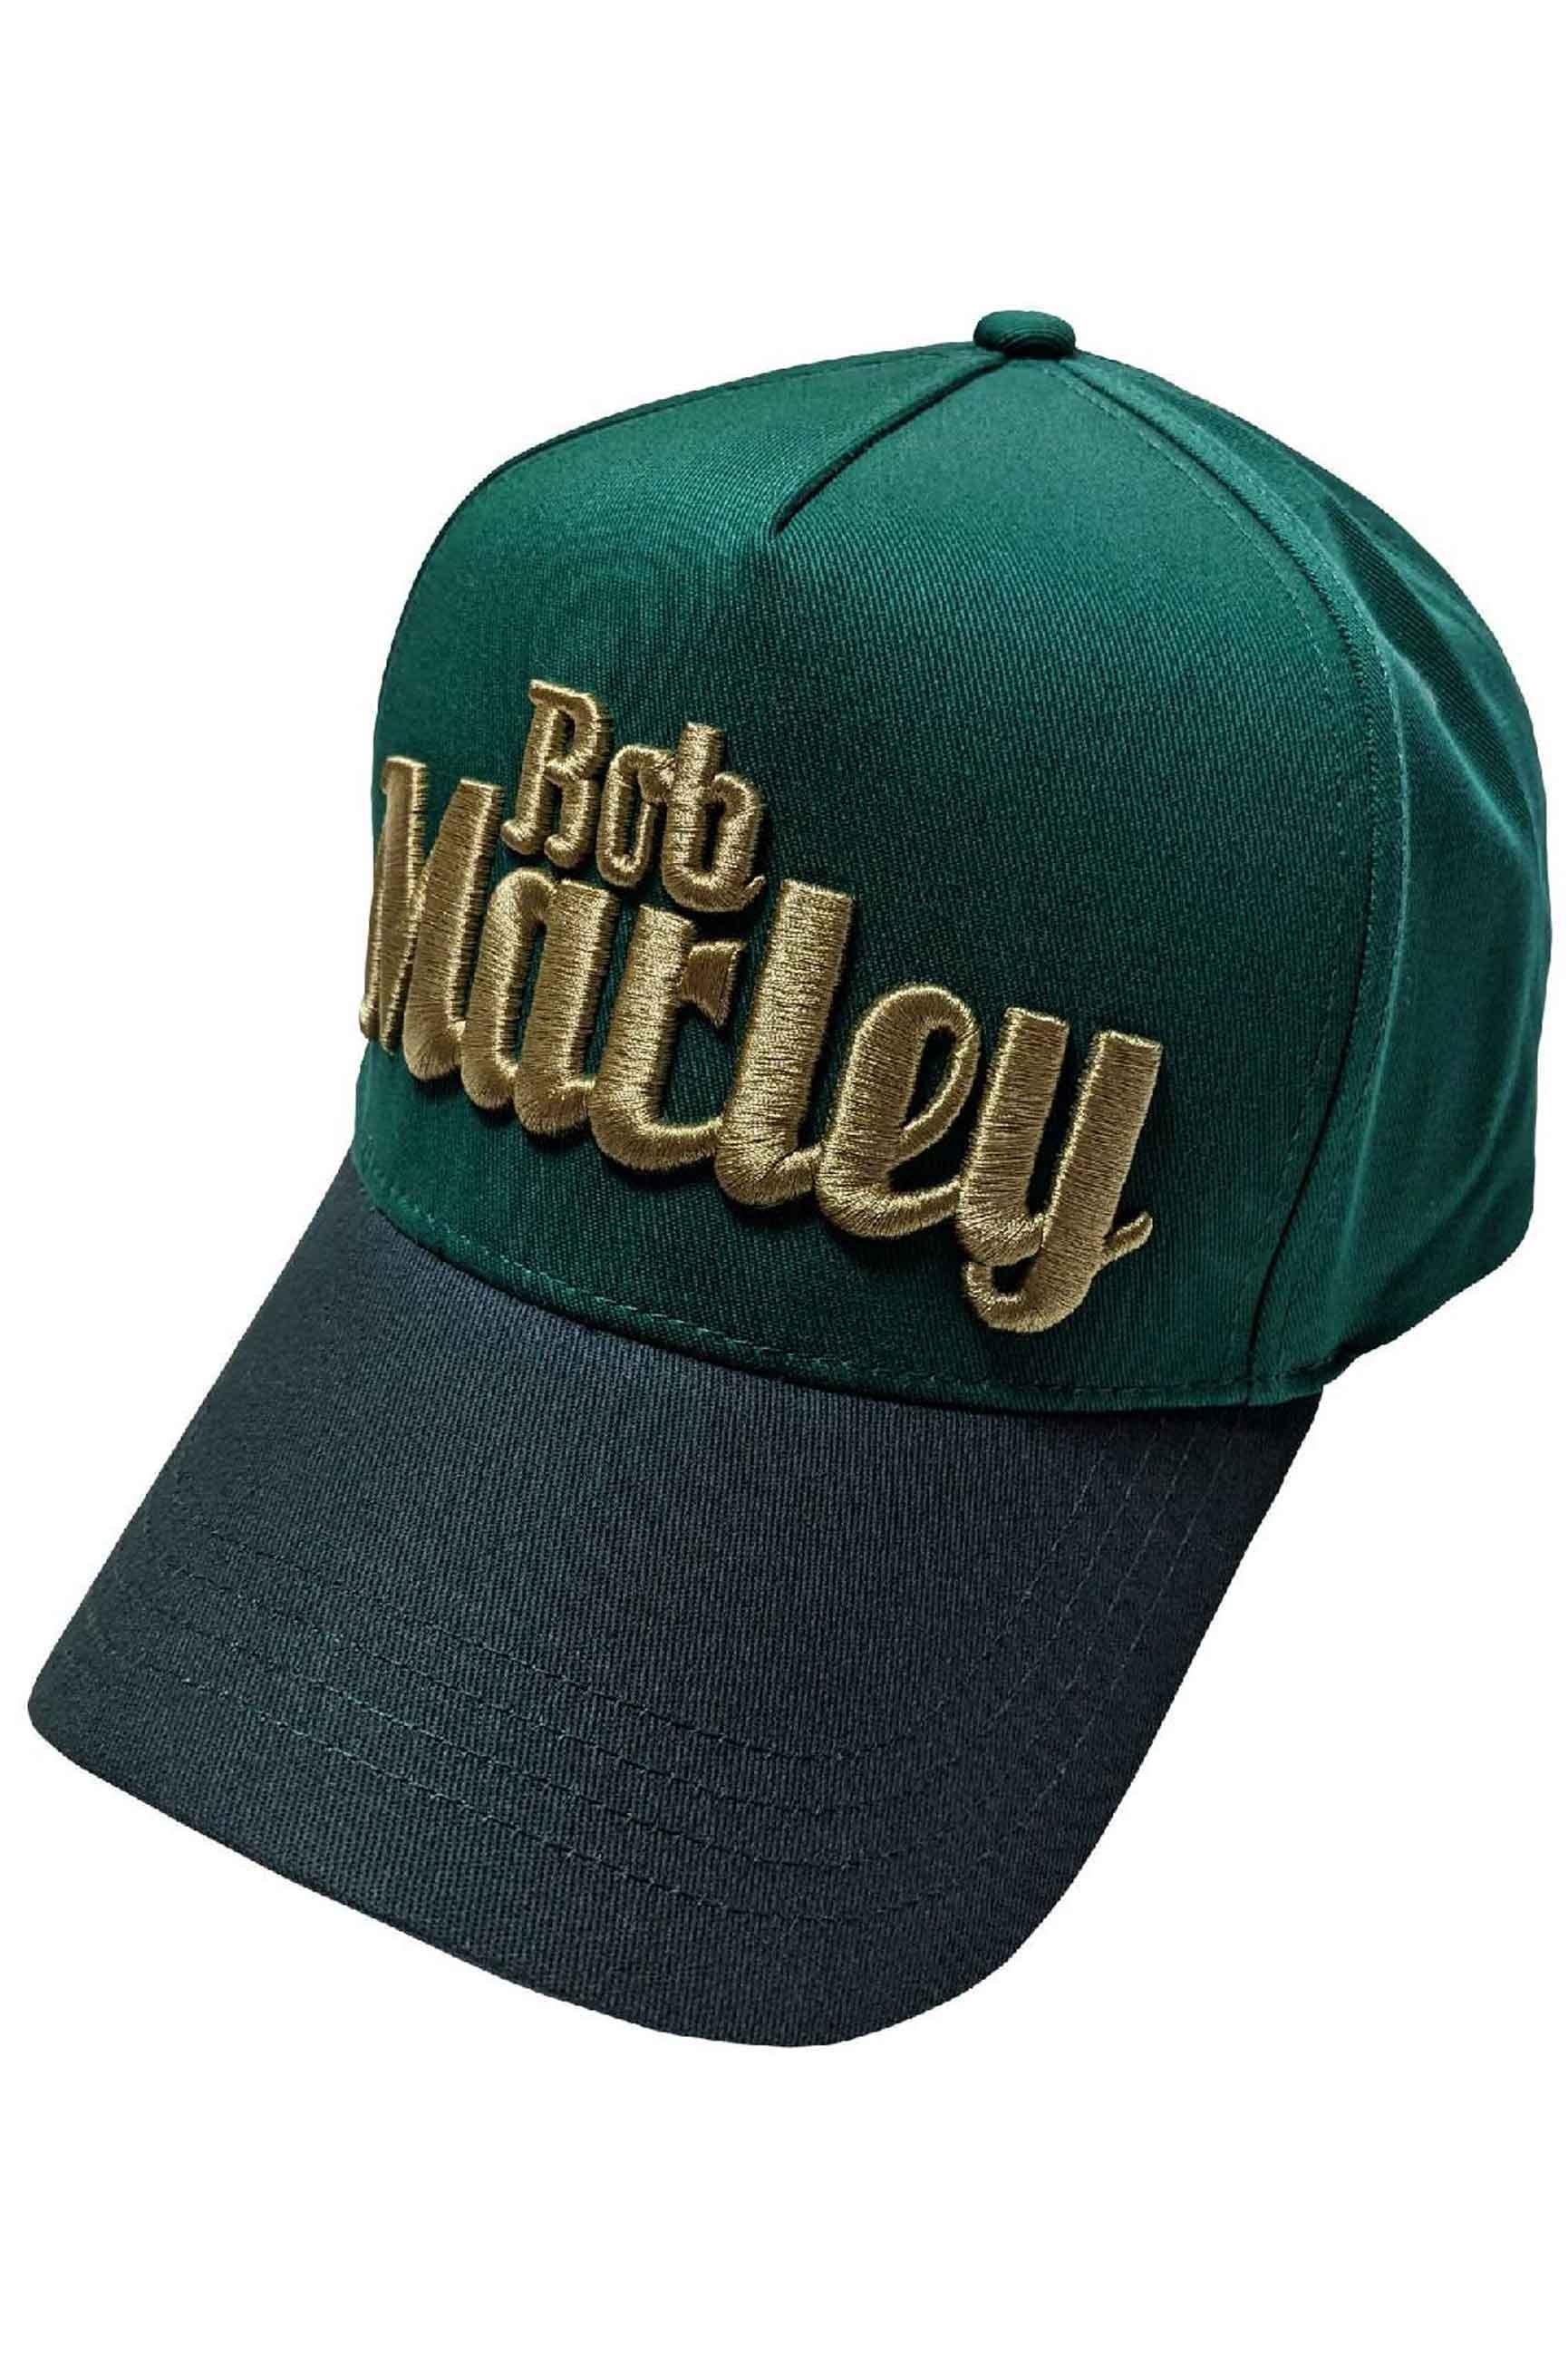 Бейсбольная кепка Trucker с текстовым логотипом Bob Marley, зеленый 1 шт унисекс сетчатая кепка утконос на весну лето многоцветный